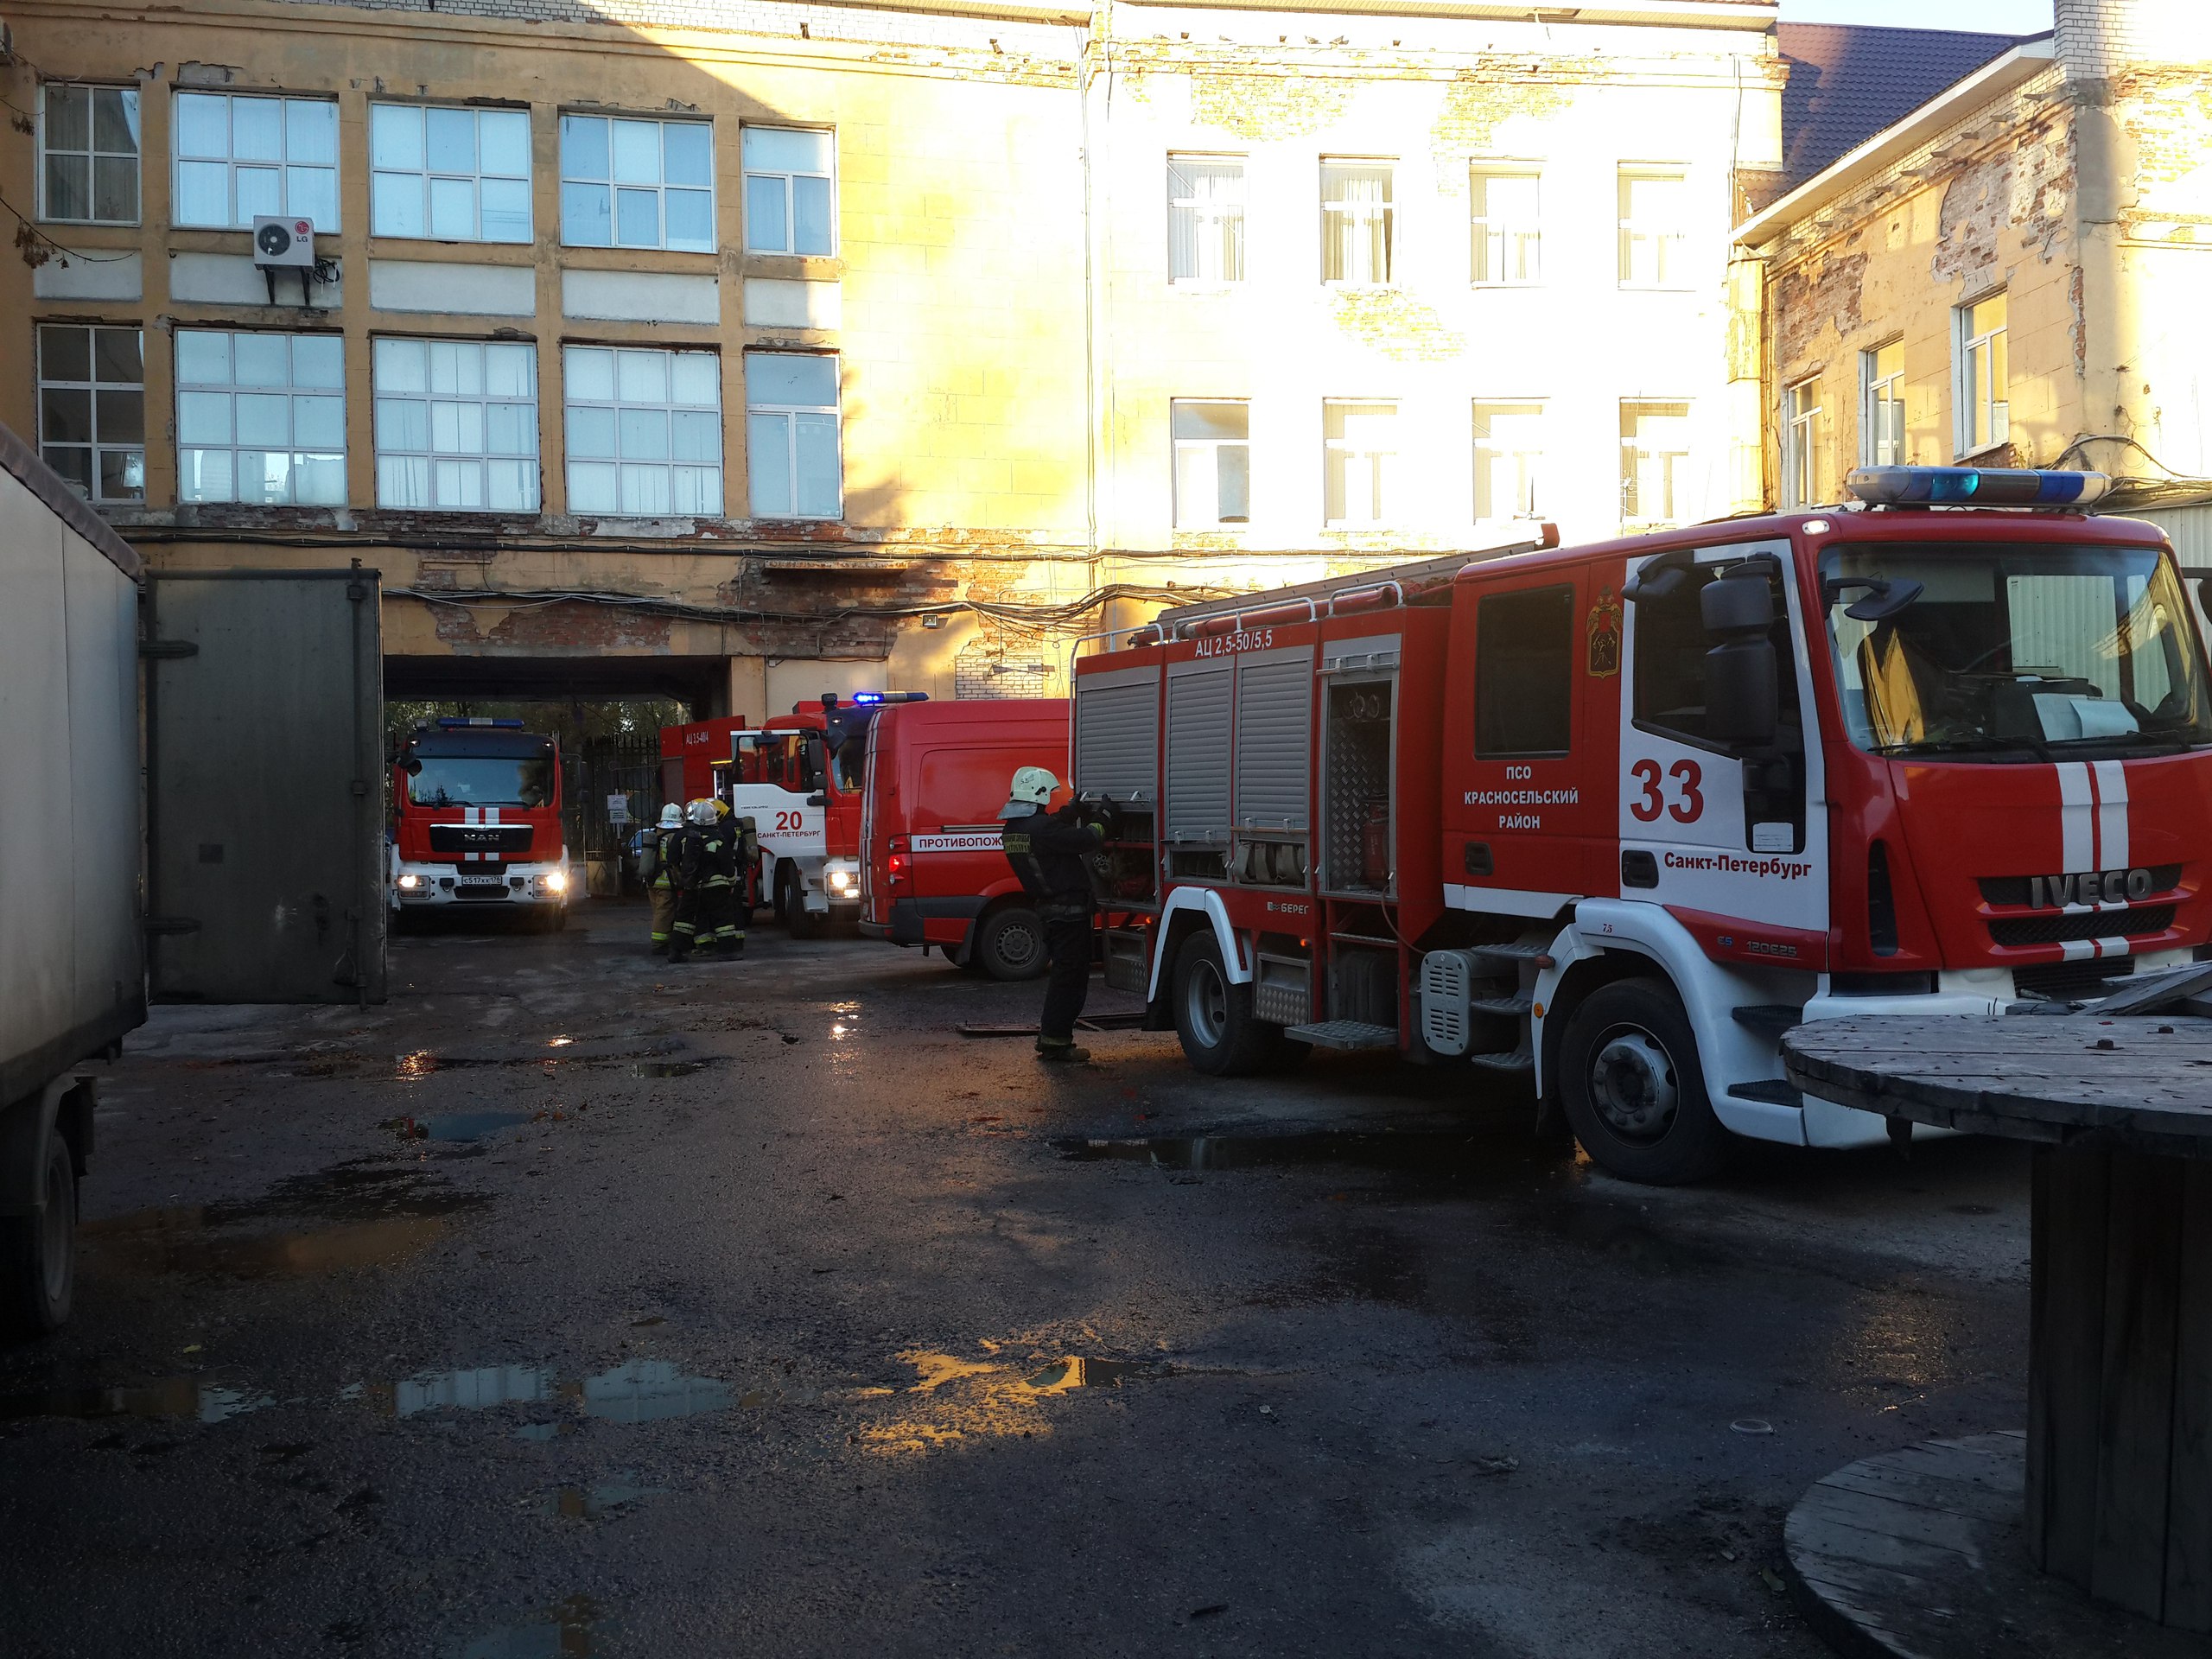 Сильный пожар на бумажной фабрике в Петербурге: огонь и дым виден издалека